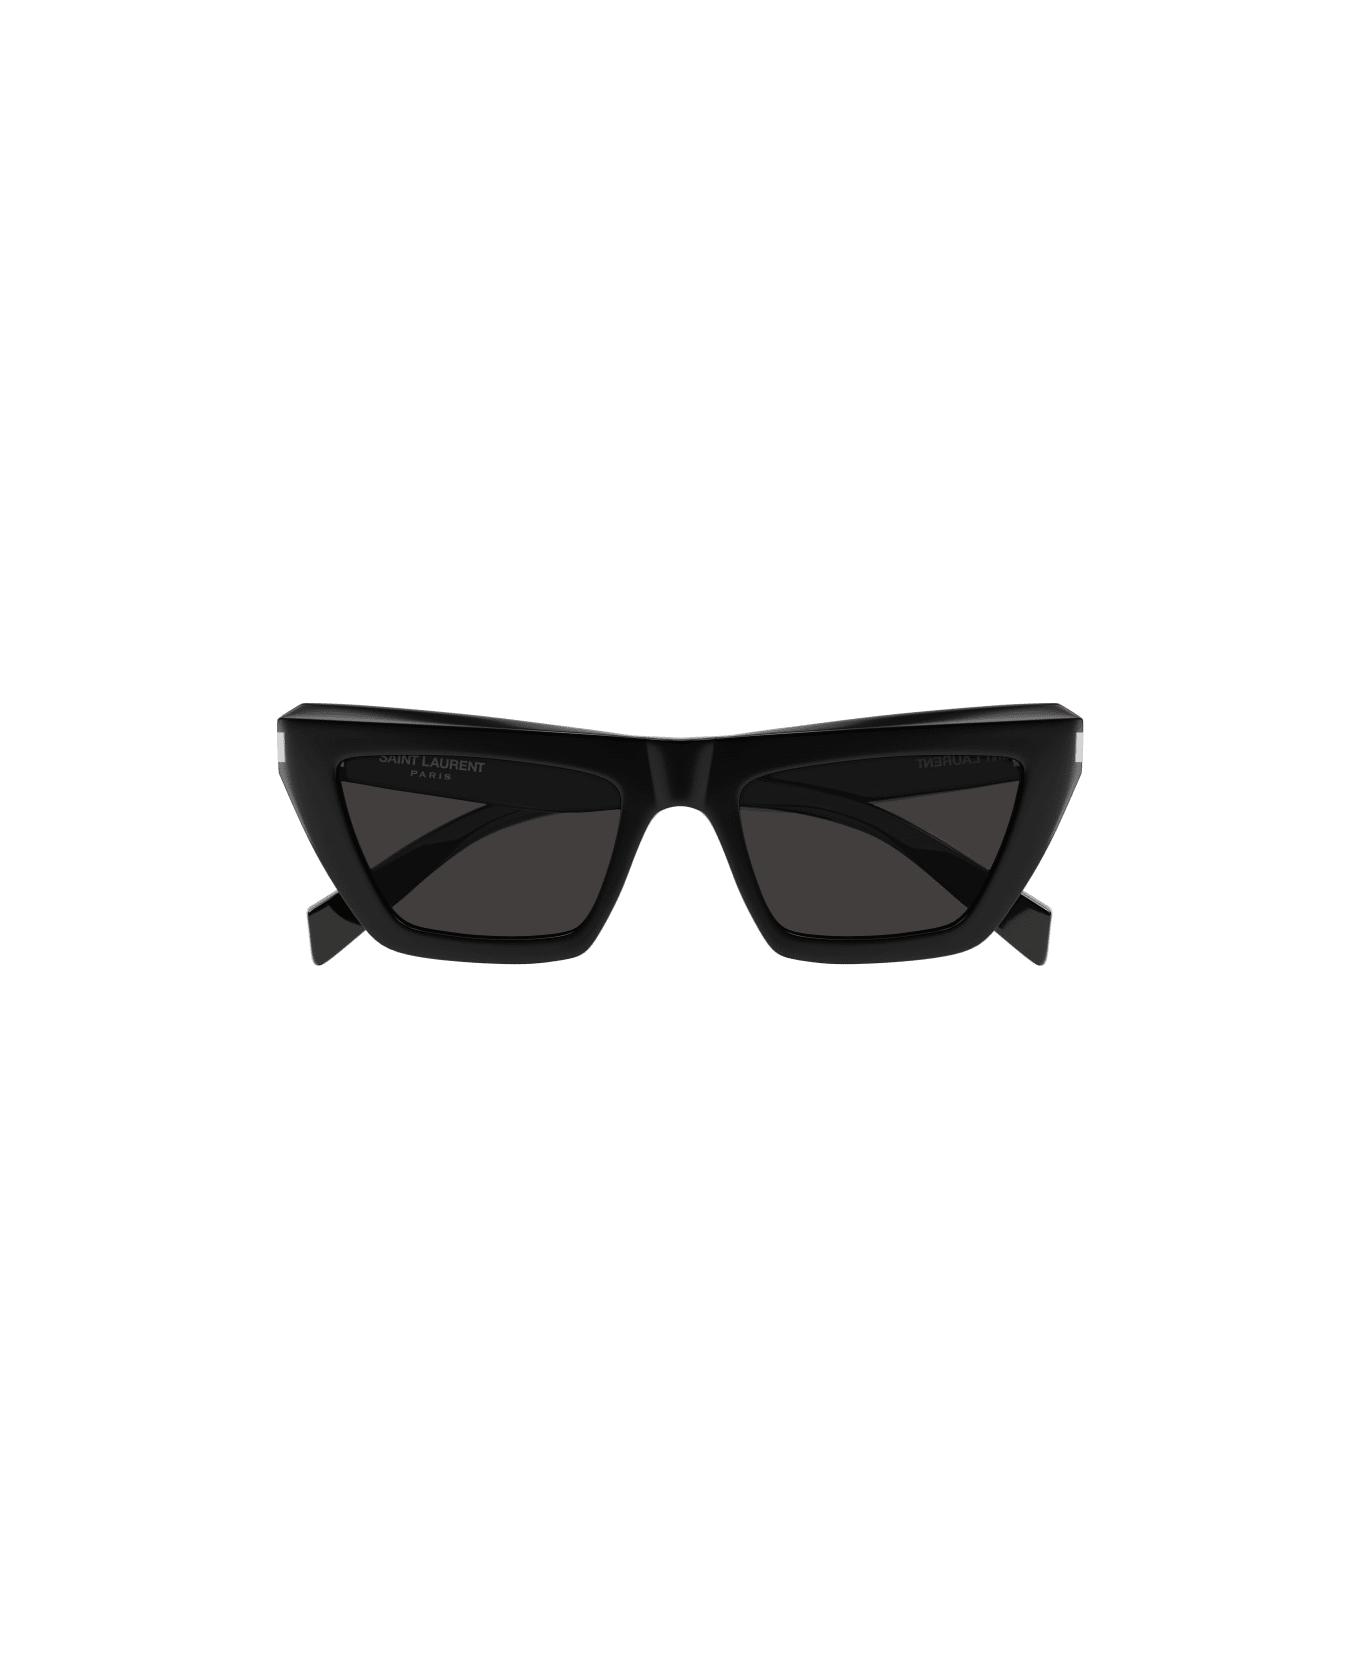 Saint Laurent Eyewear SL 467 Sunglasses - Black Black Black